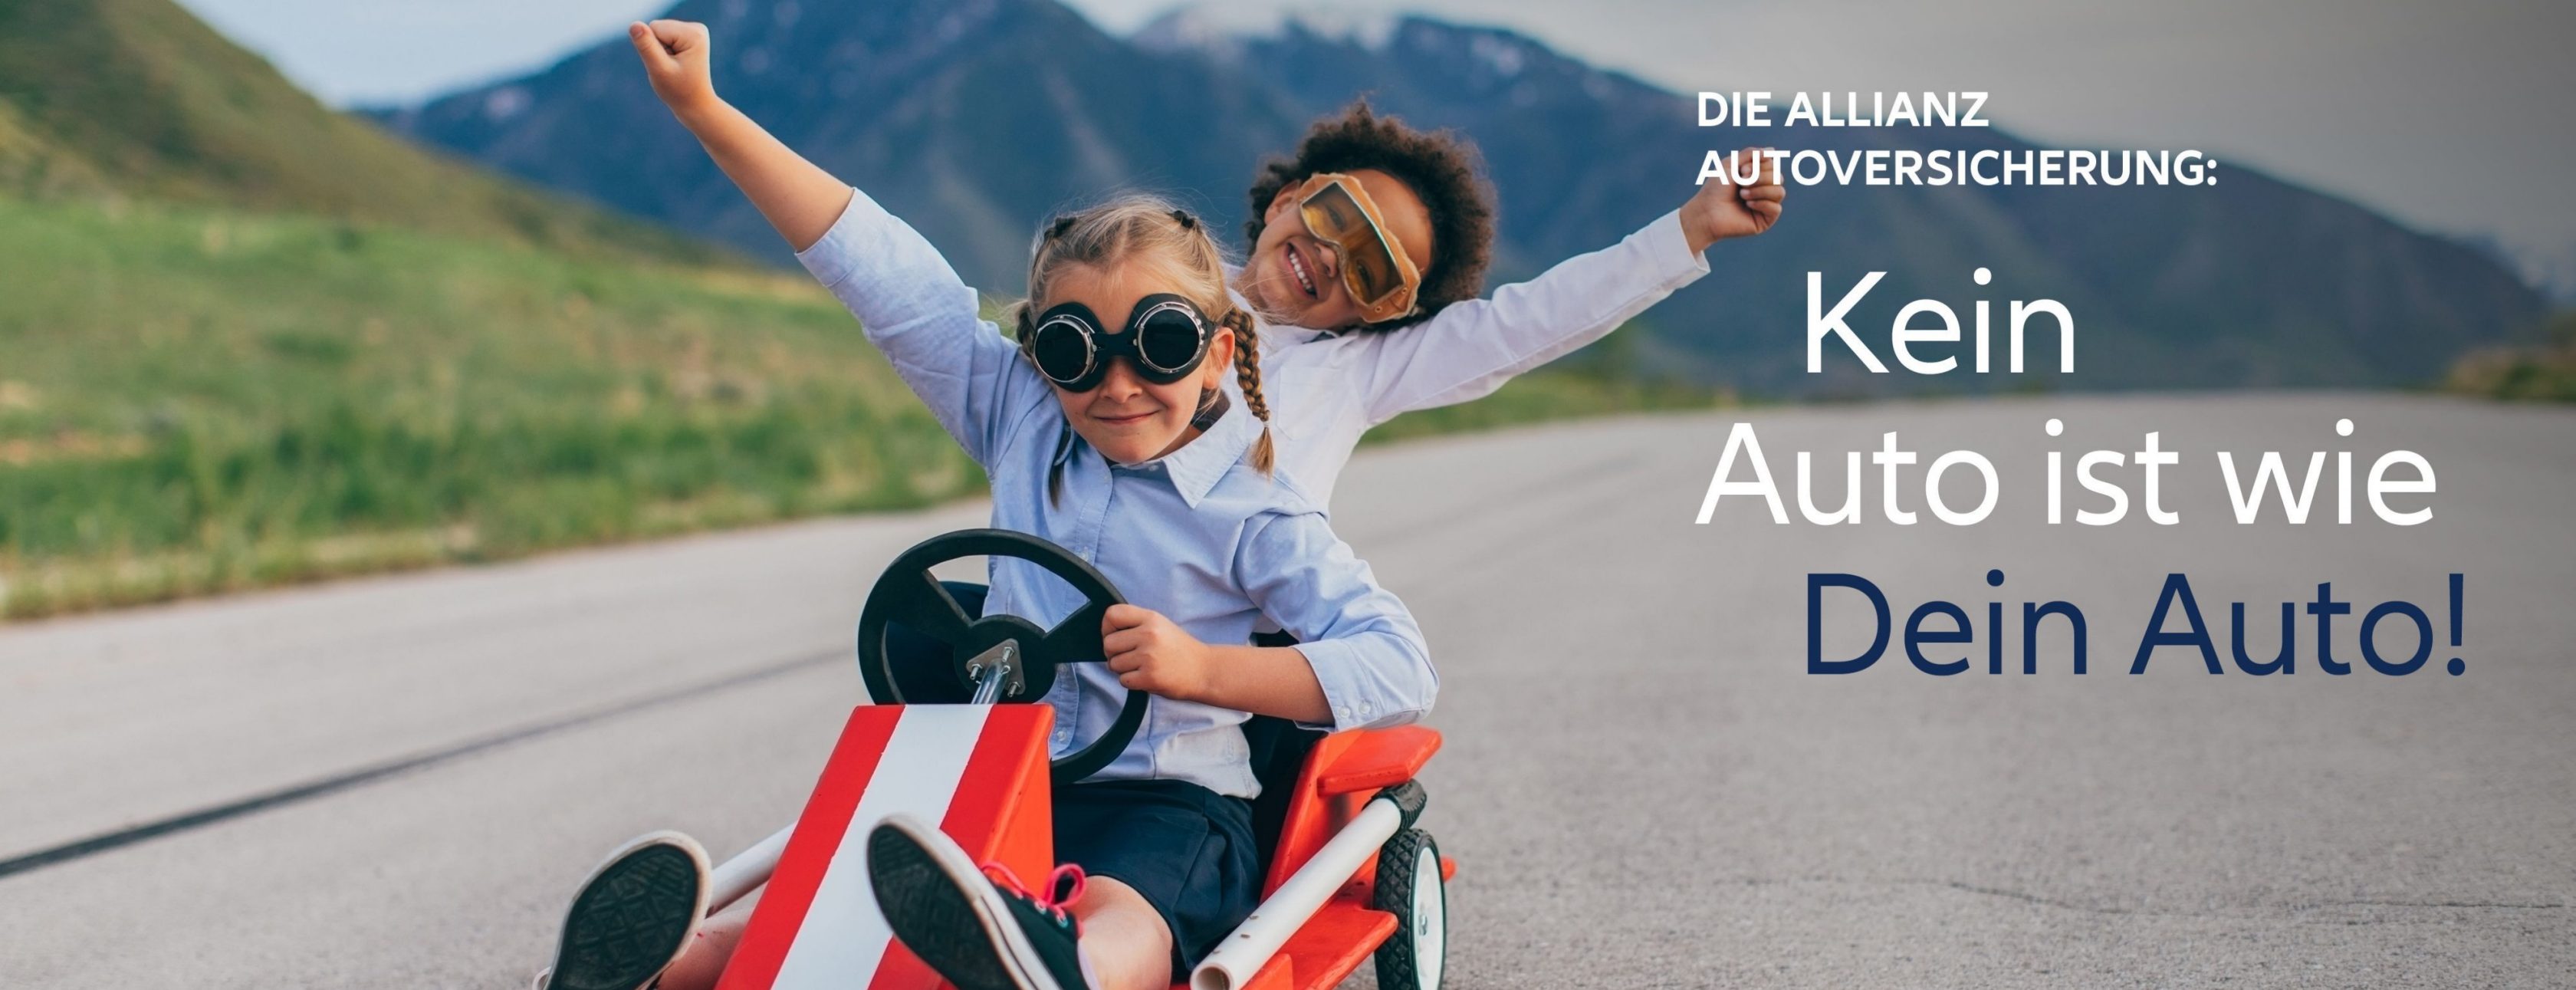 Allianz Versicherung Christine von Roon Emsdetten - Kein Auto ist wie Dein Auto